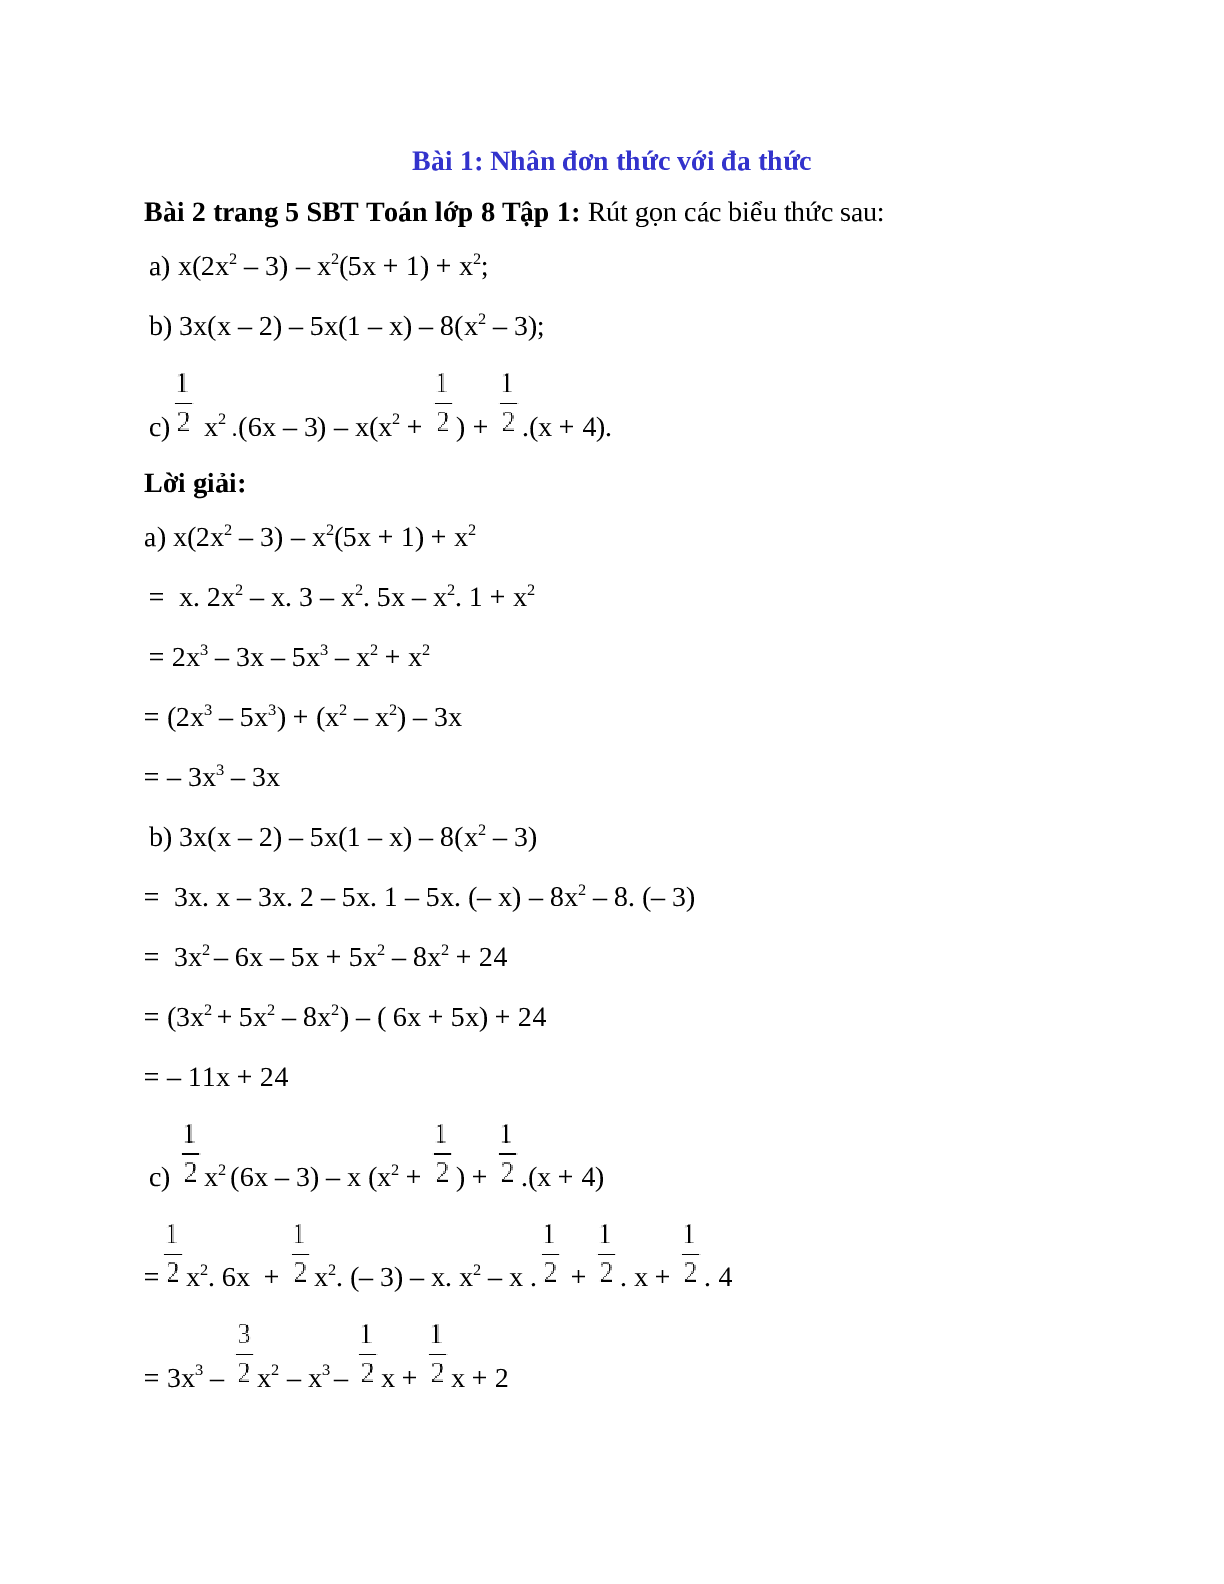 Giải bài Rút gọn các biểu thức sau: x(2x^2 – 3) – x^2(5x + 1) + x^2 chi tiết (trang 1)